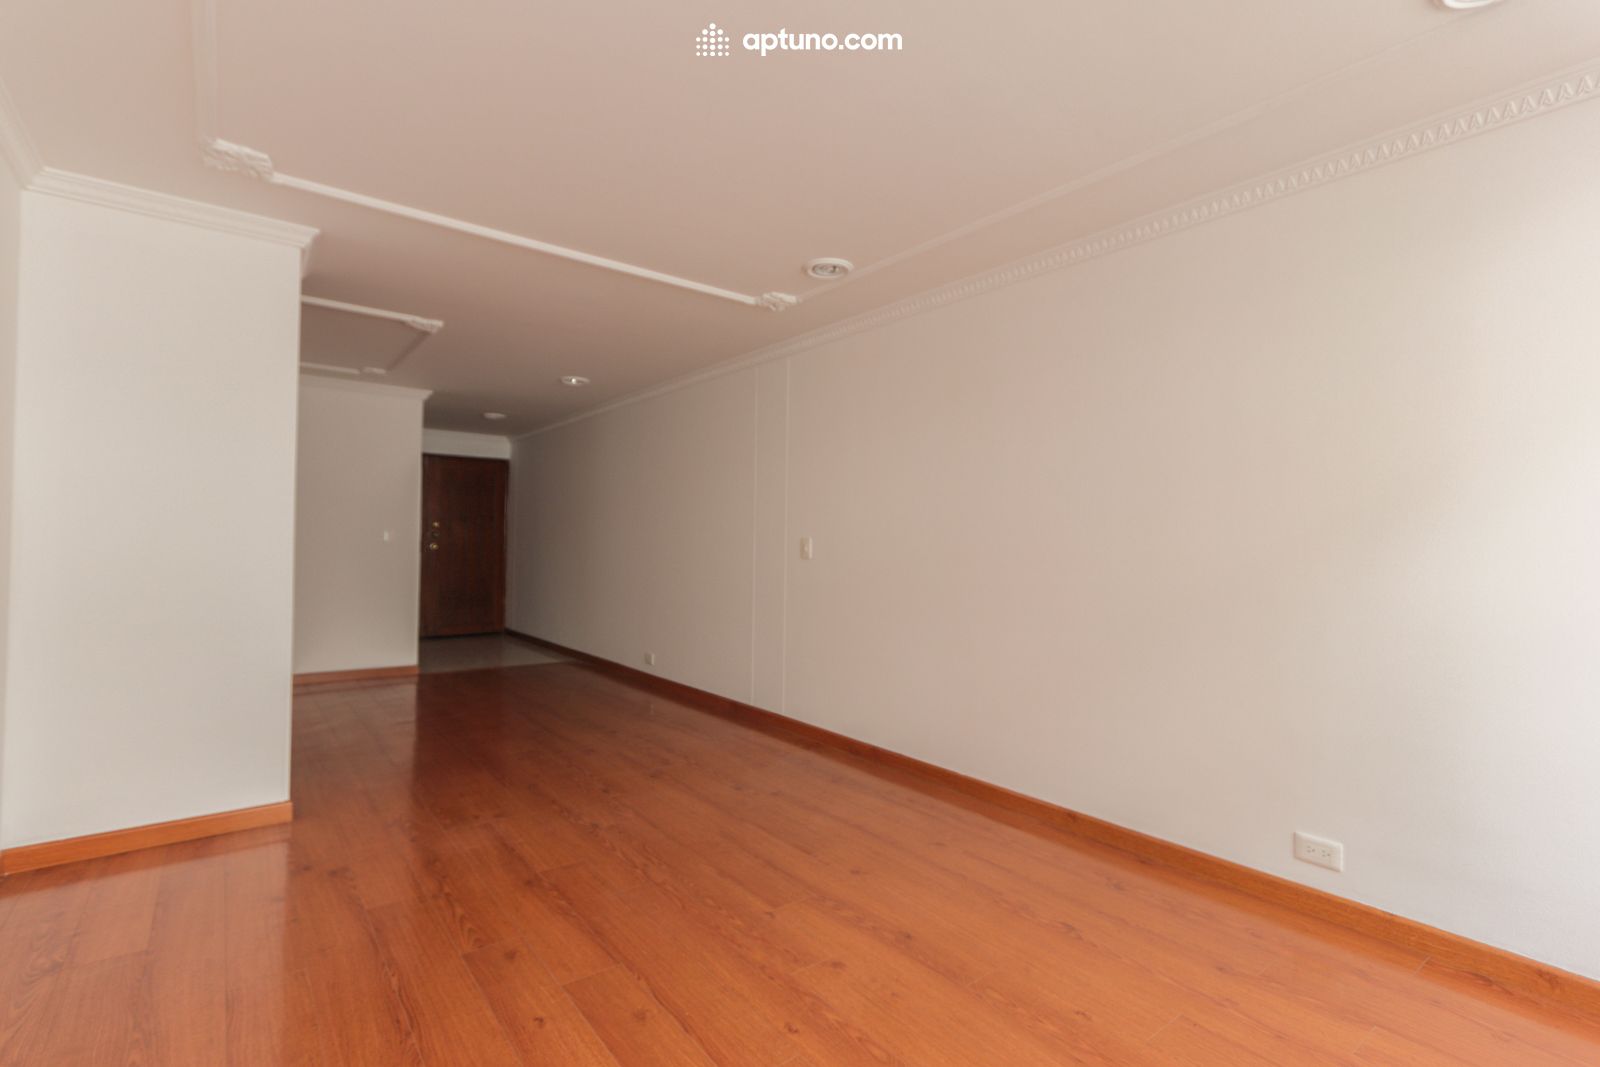 Apartamento en arriendo Santa Bárbara Central 84 m² - $ 3.100.000